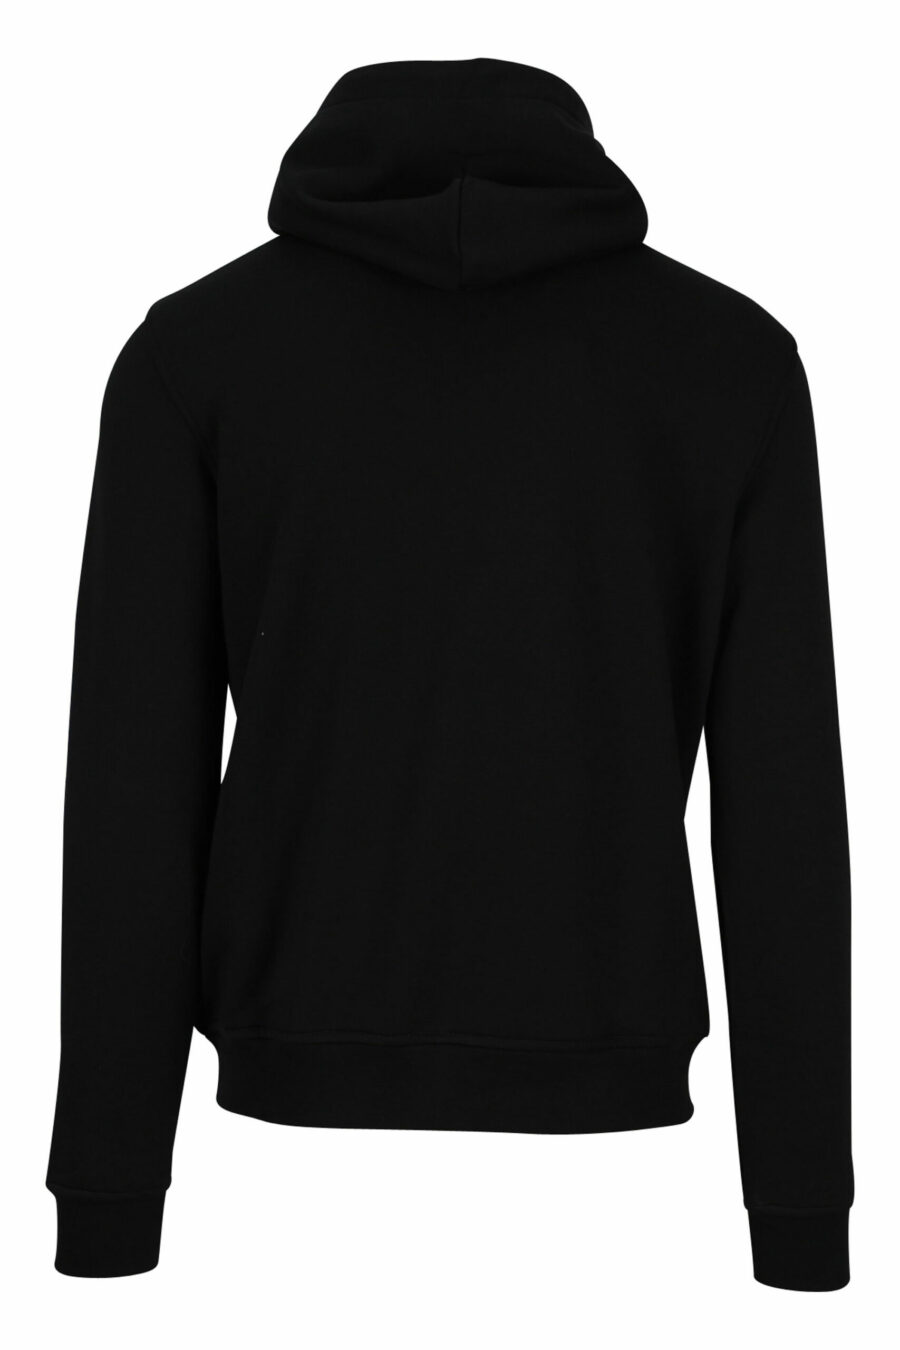 Schwarzes Kapuzensweatshirt mit einfarbigem Gummi-Mini-Logo - 4062226393577 3 skaliert